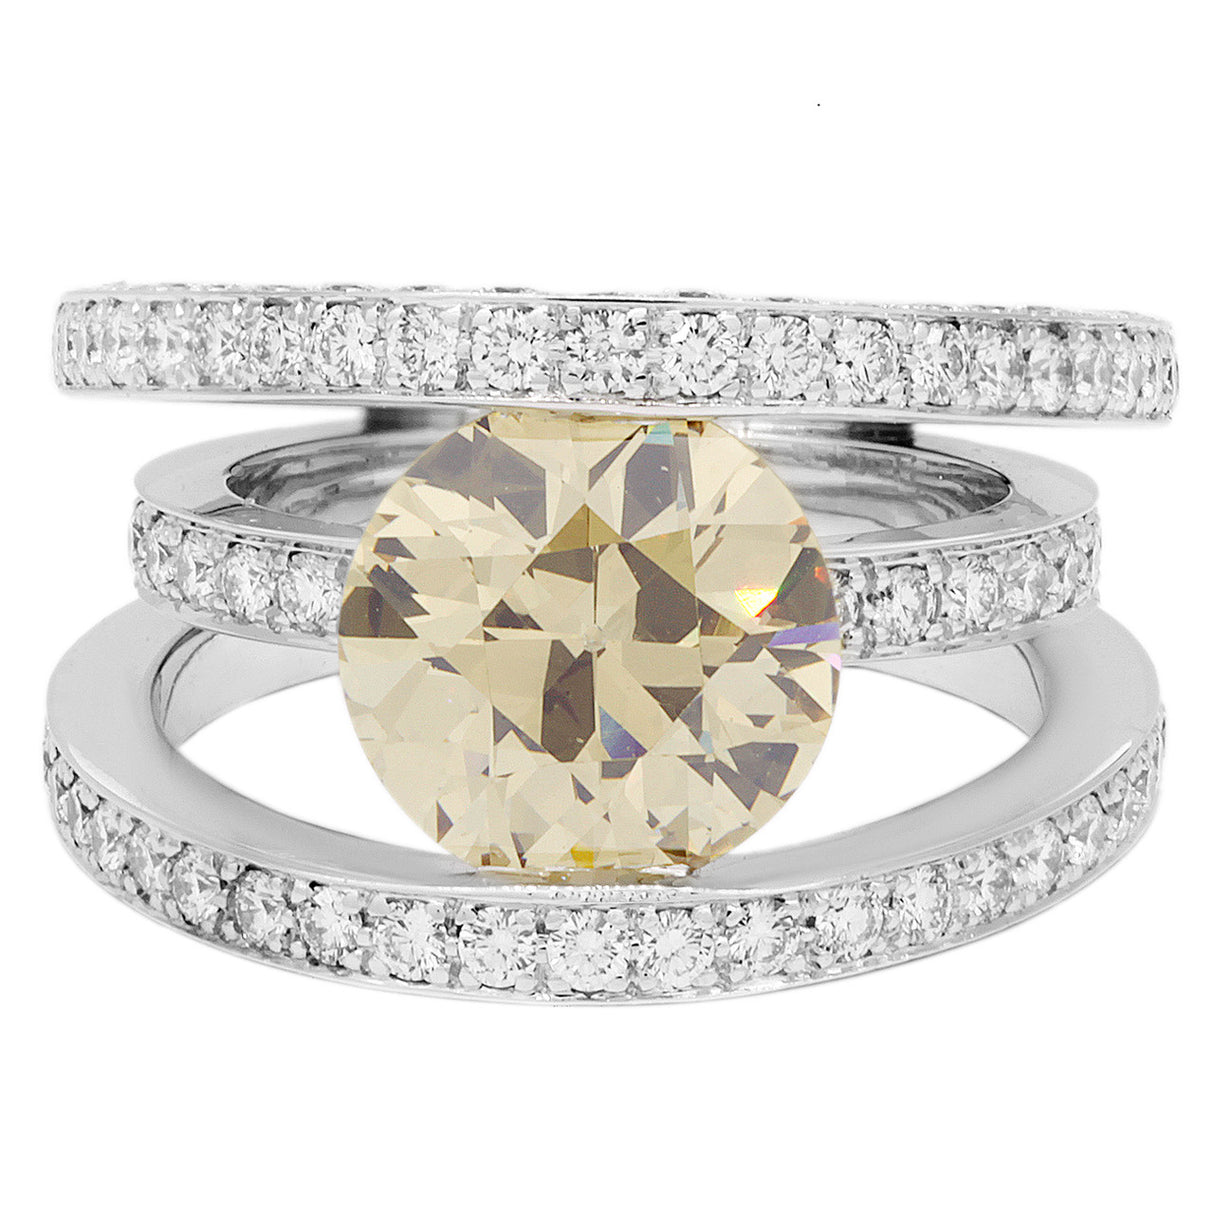 18K White Gold 3.14 Carat Fancy Yellow/Brown Diamond Ring